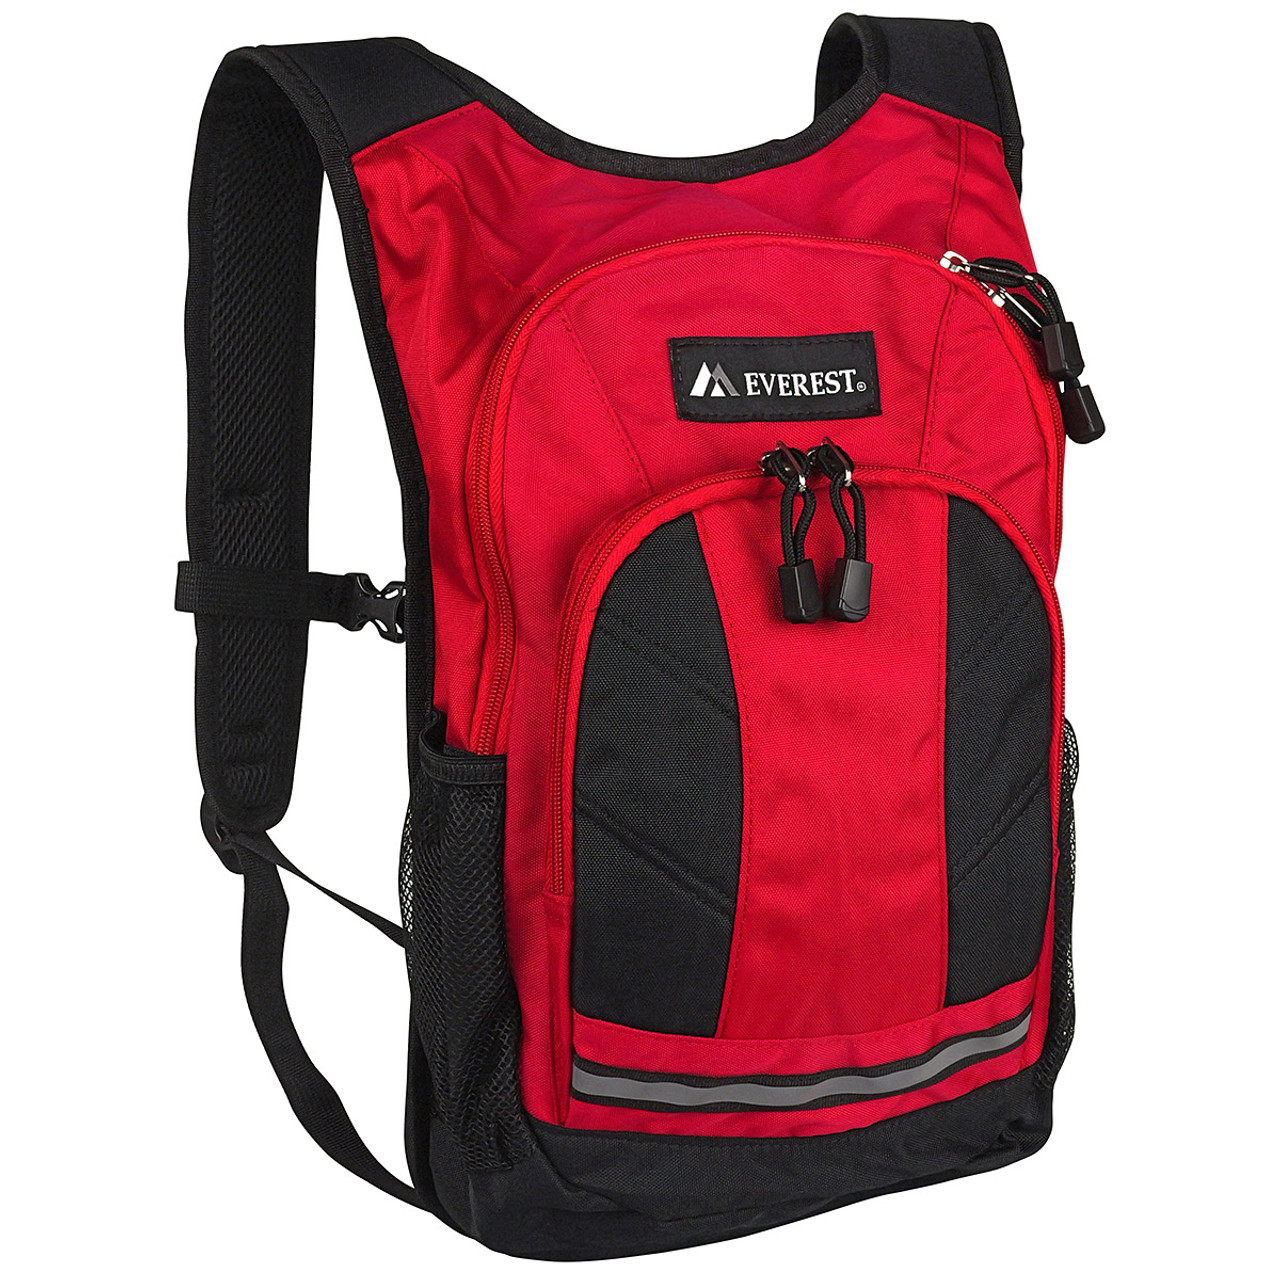 Everest Multi-Use Backpack - 8.2L, Red/Black